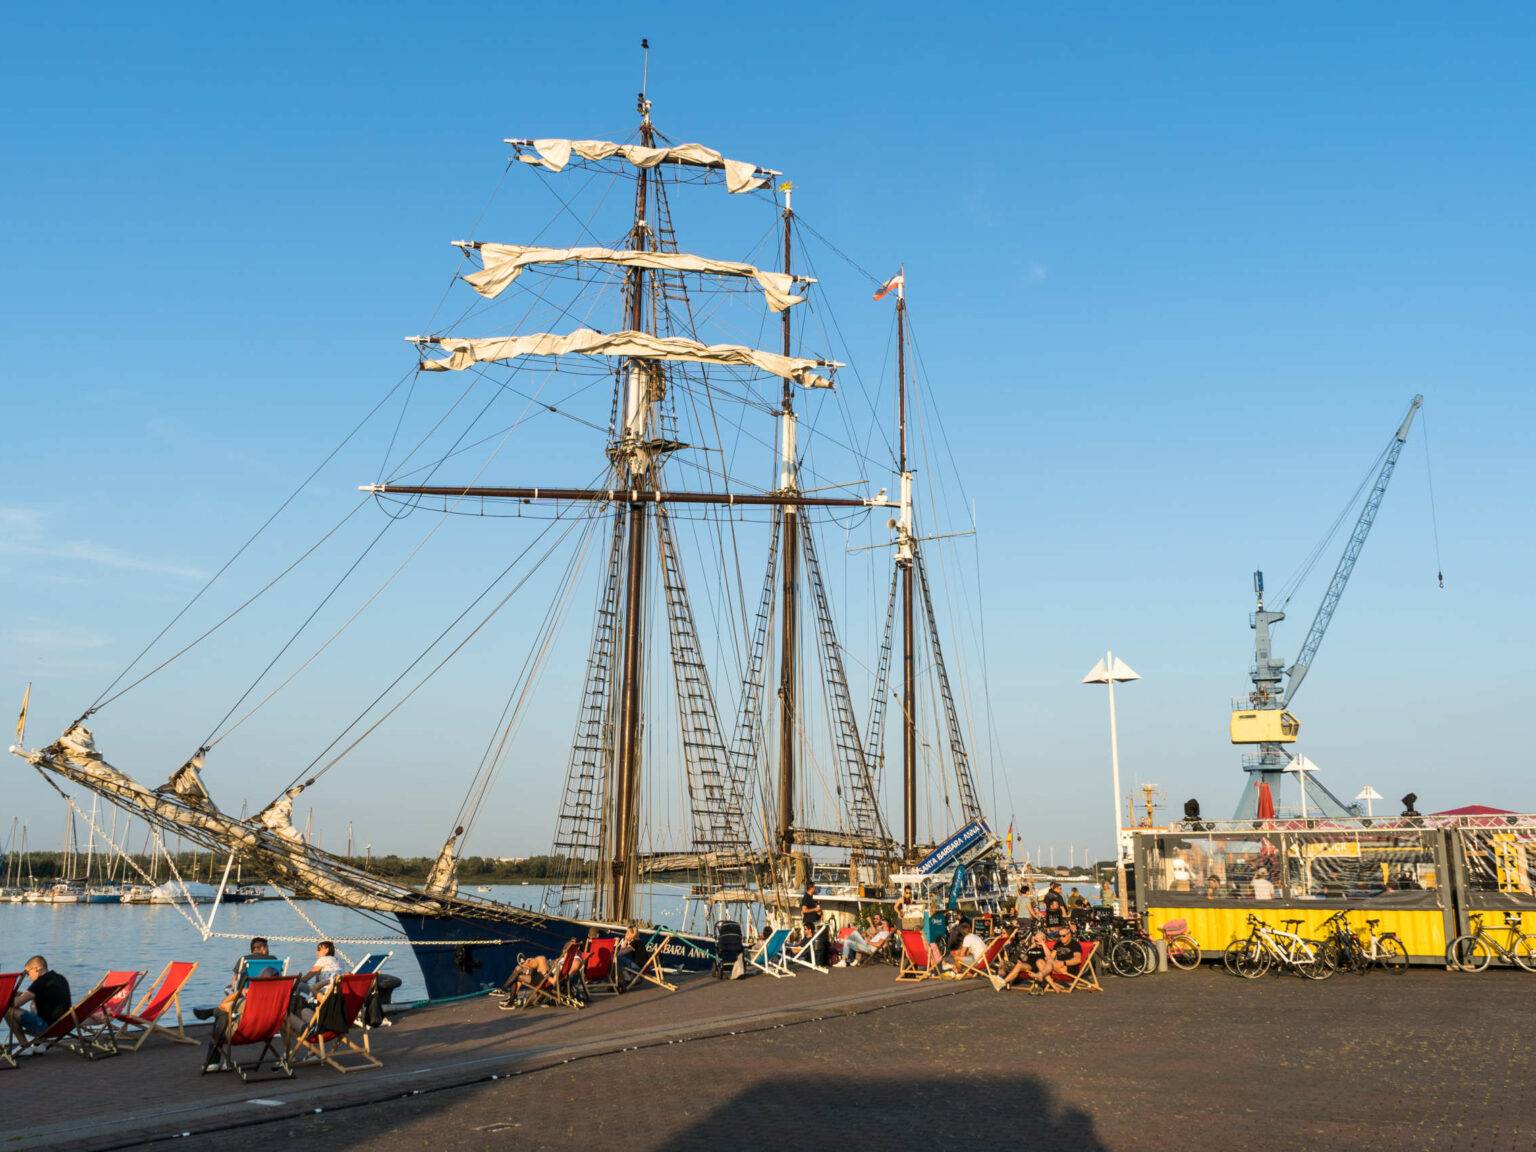 Ein umfunktioniertes Schiff liegt in Rostock an einem Dock an, davor sitzen Menschen in Strandstühlen, daneben befindet sich ein kleiner Unterstand mit anlehnenden Fahrrädern, der Himmel ist strahlend blau, man blickt auf einen Kran.